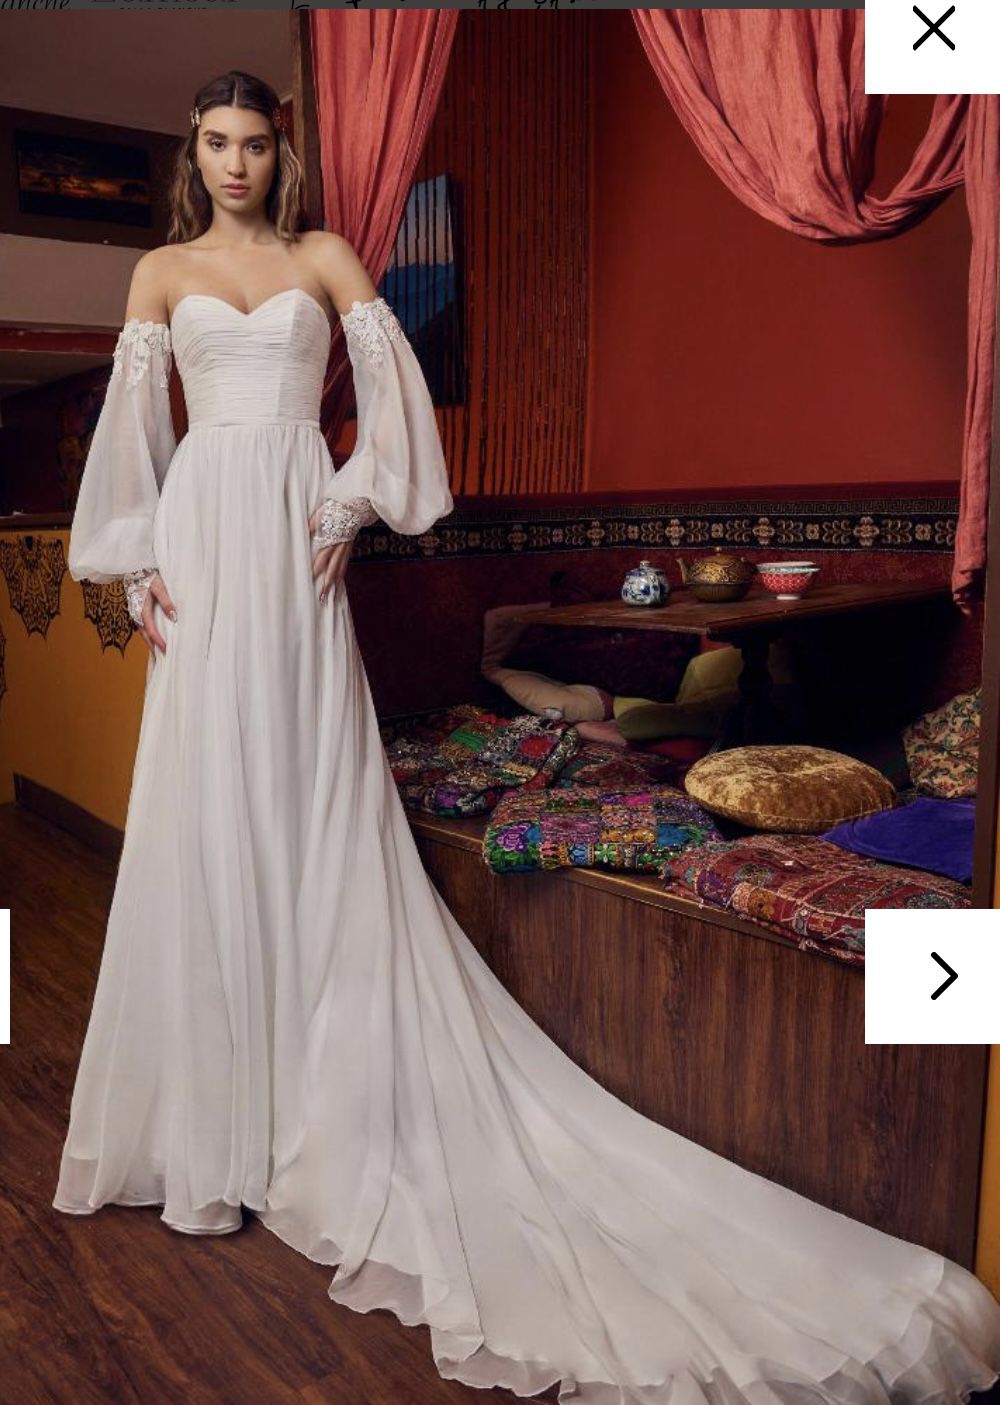 Wedding dress by Calla Blanche